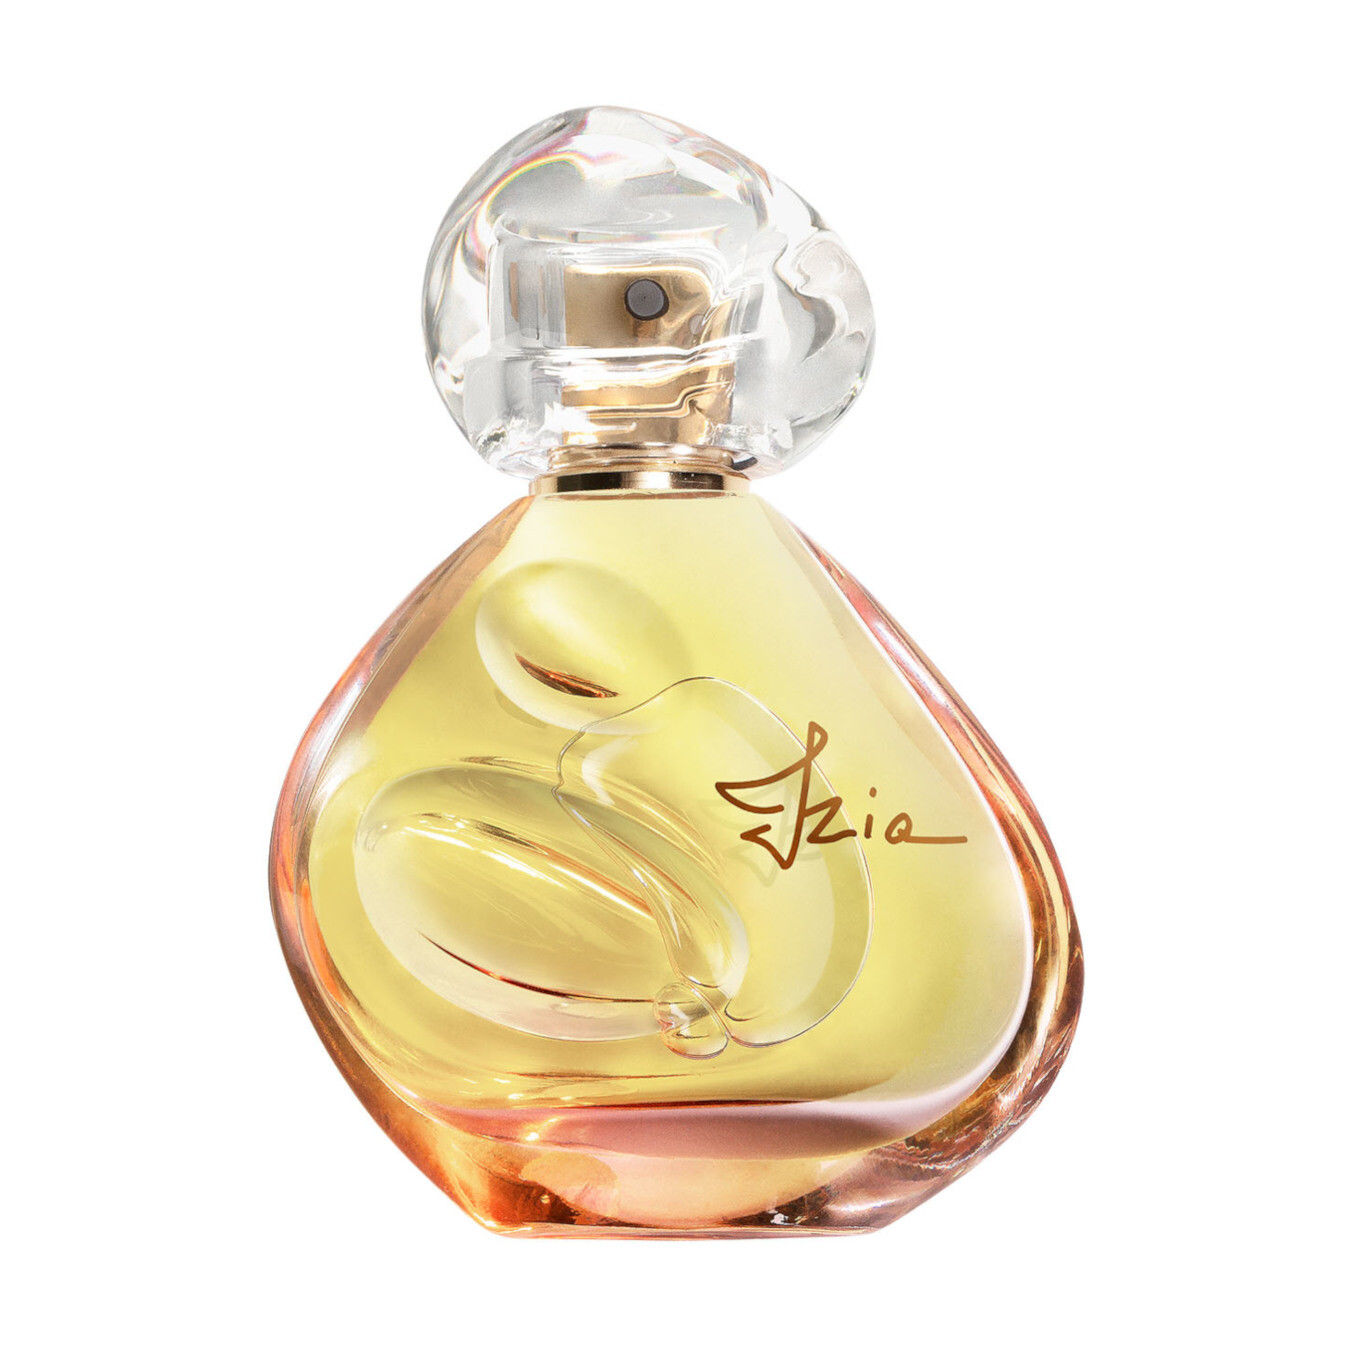 Sisley Izia Eau de Parfum Spray 50ml Damen von Sisley